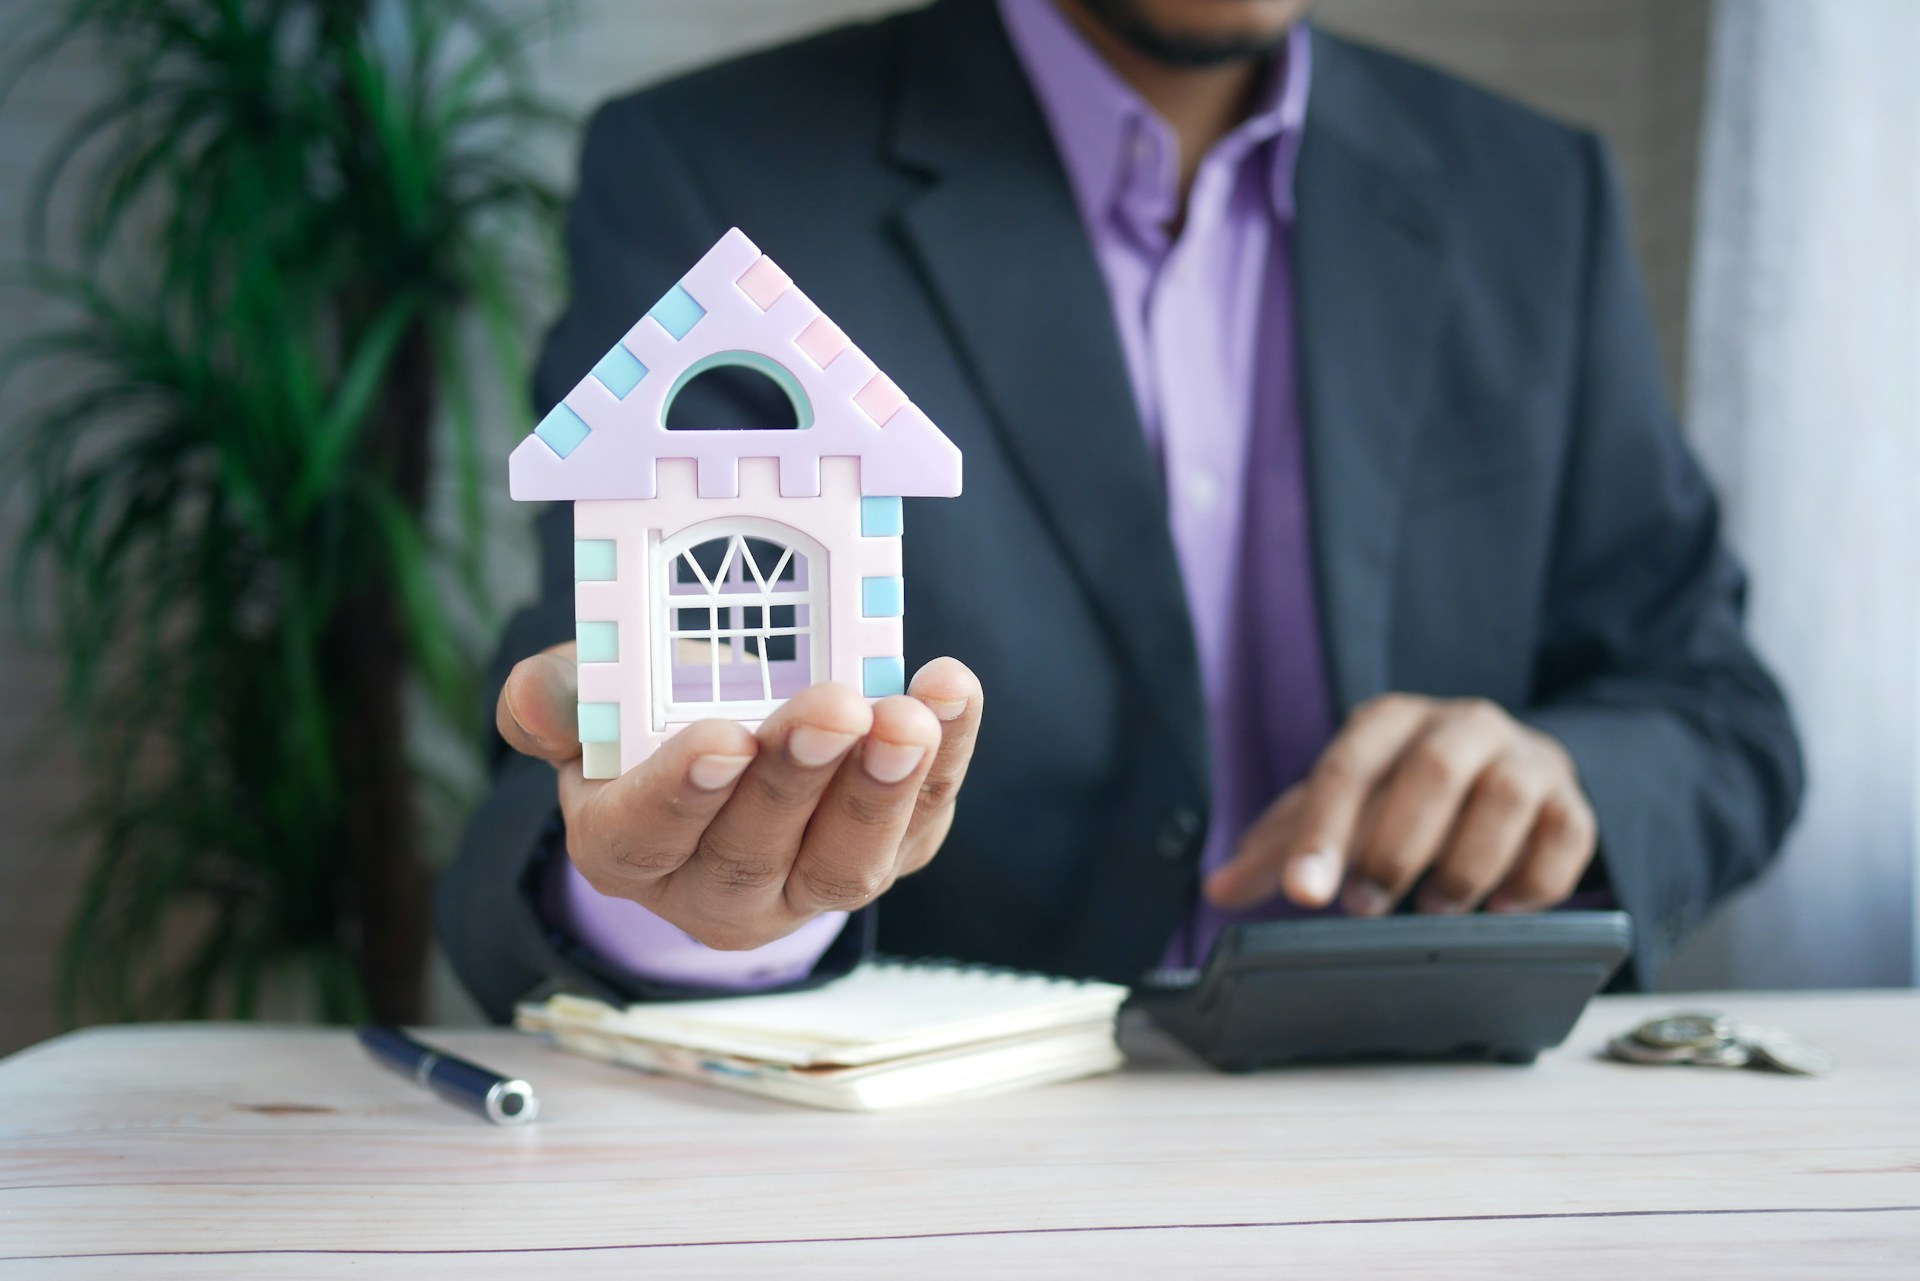 Foto de um executivo segurando uma miniatura de casa enquanto faz cálculos, ilustrando a ideia de empréstimo para investir